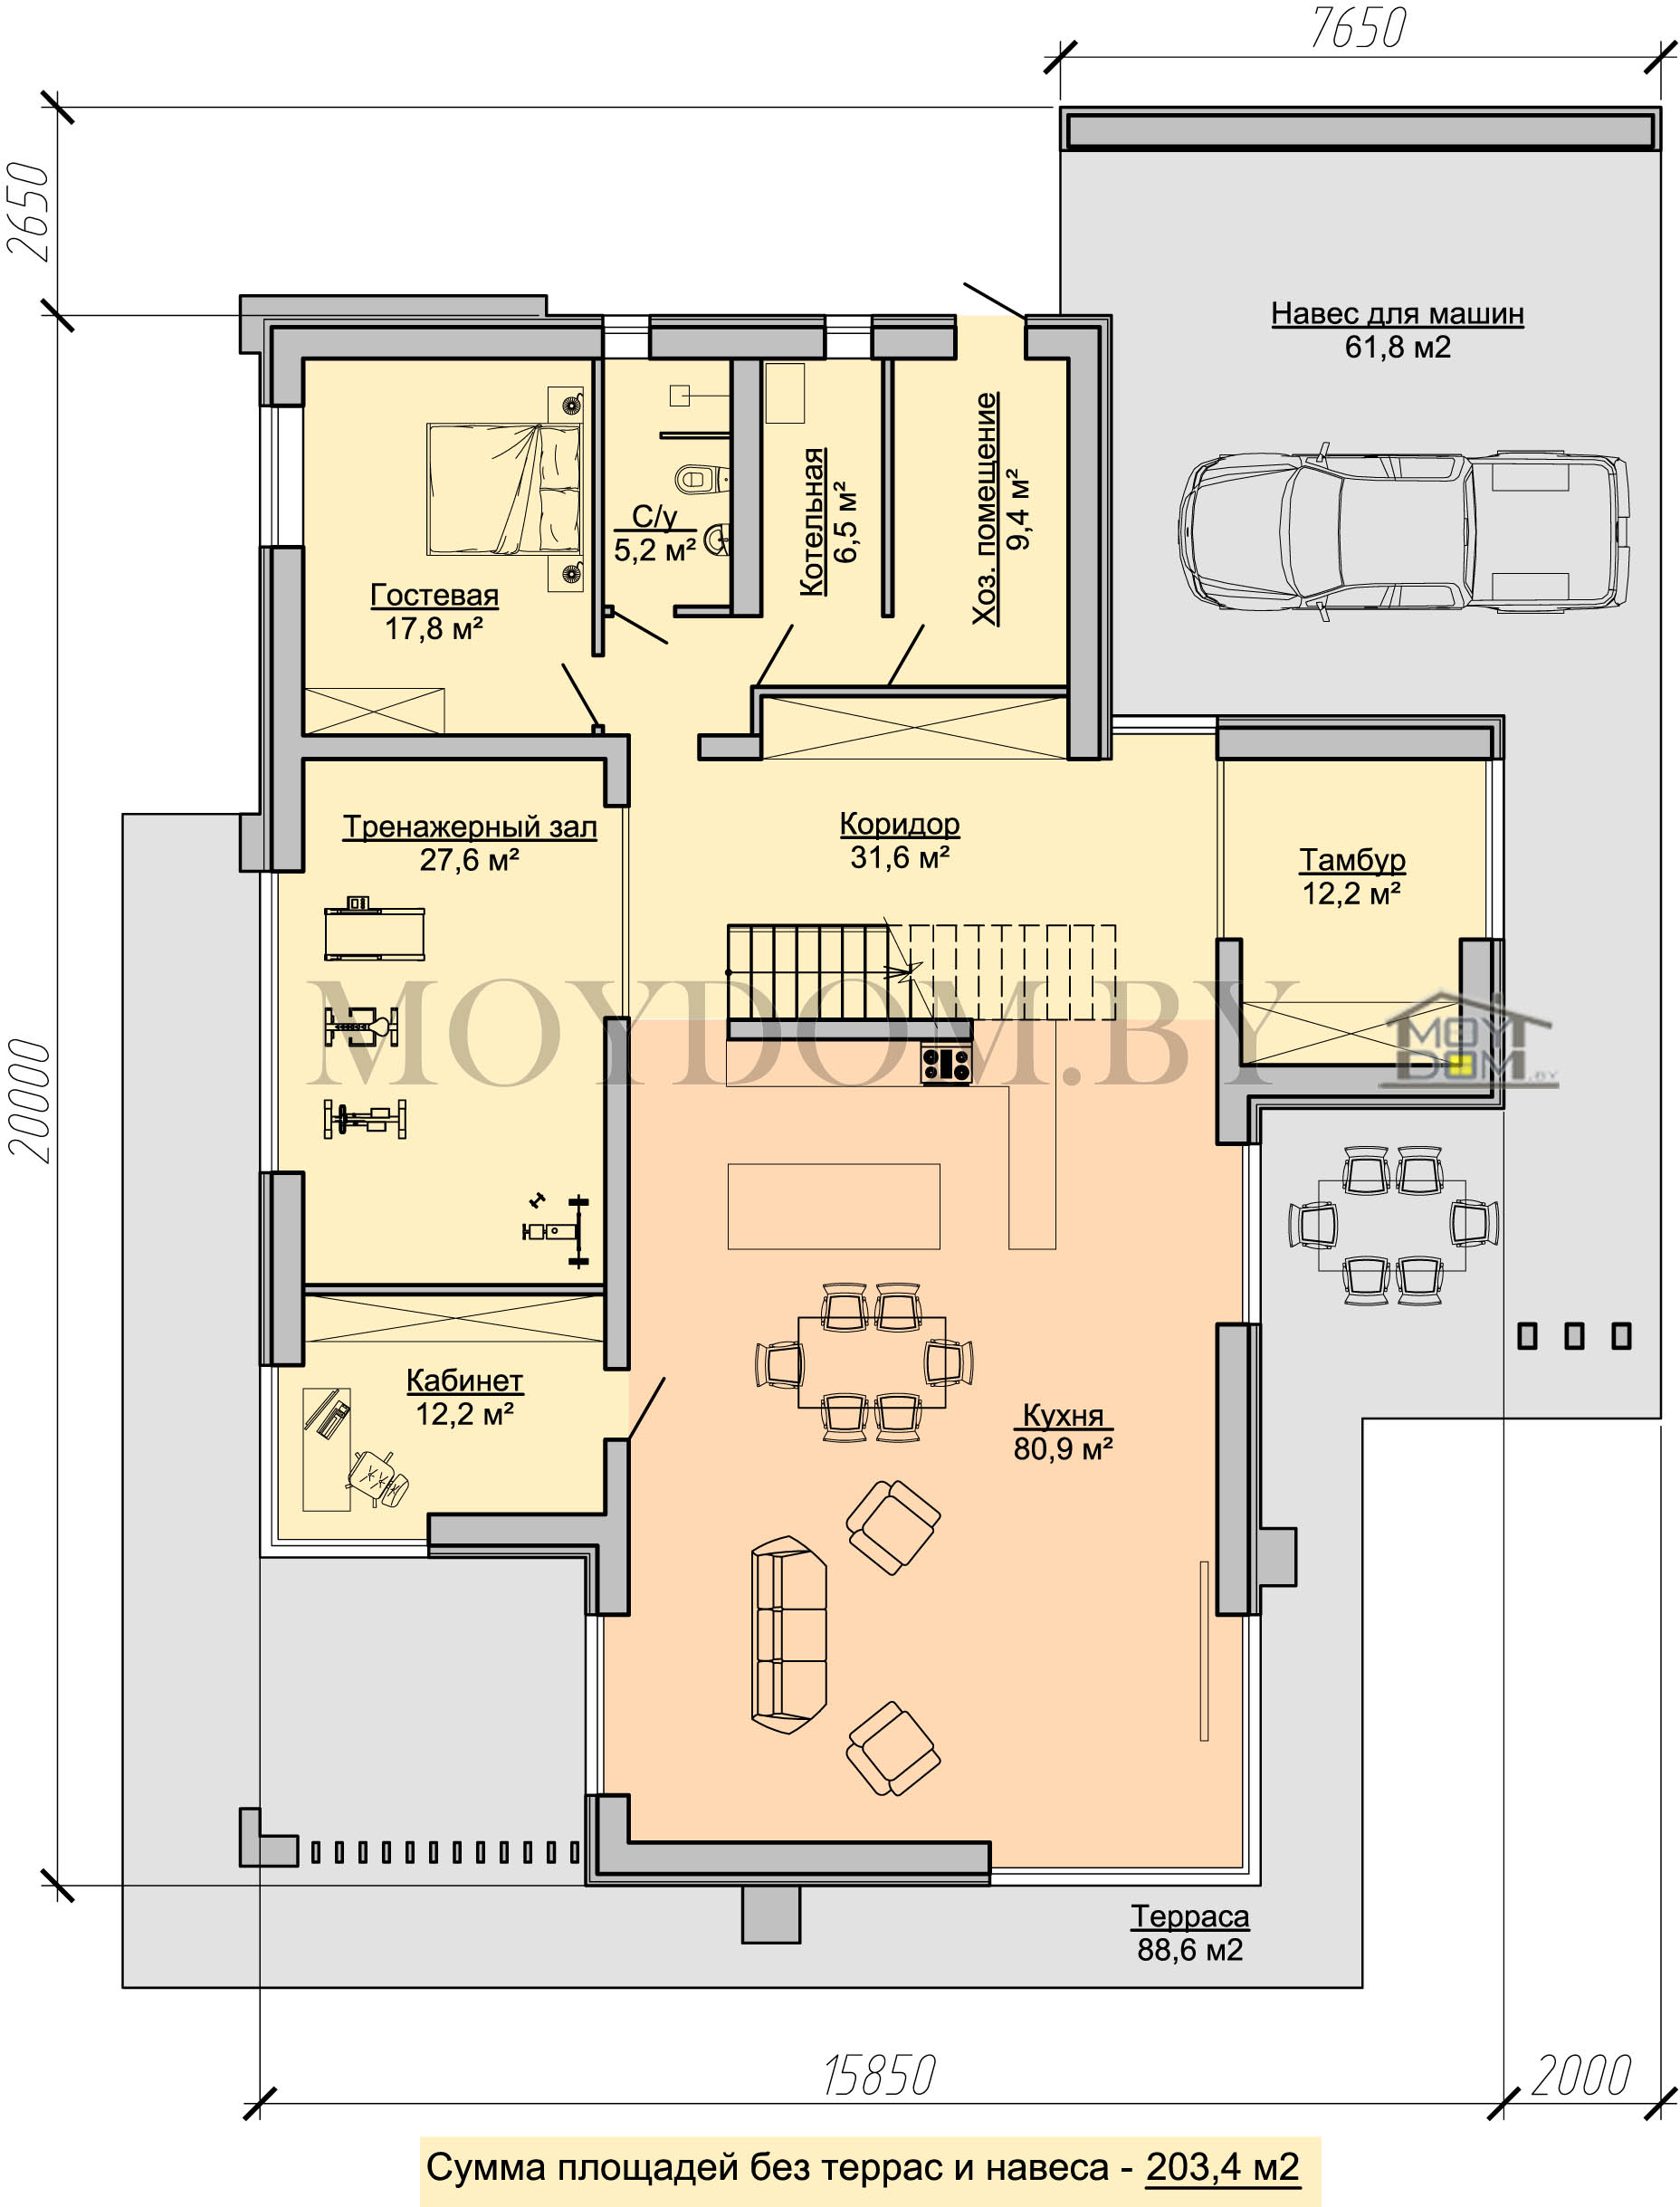 план современного дома 16 на 20 с огромной гостиной, тренажёрным залом